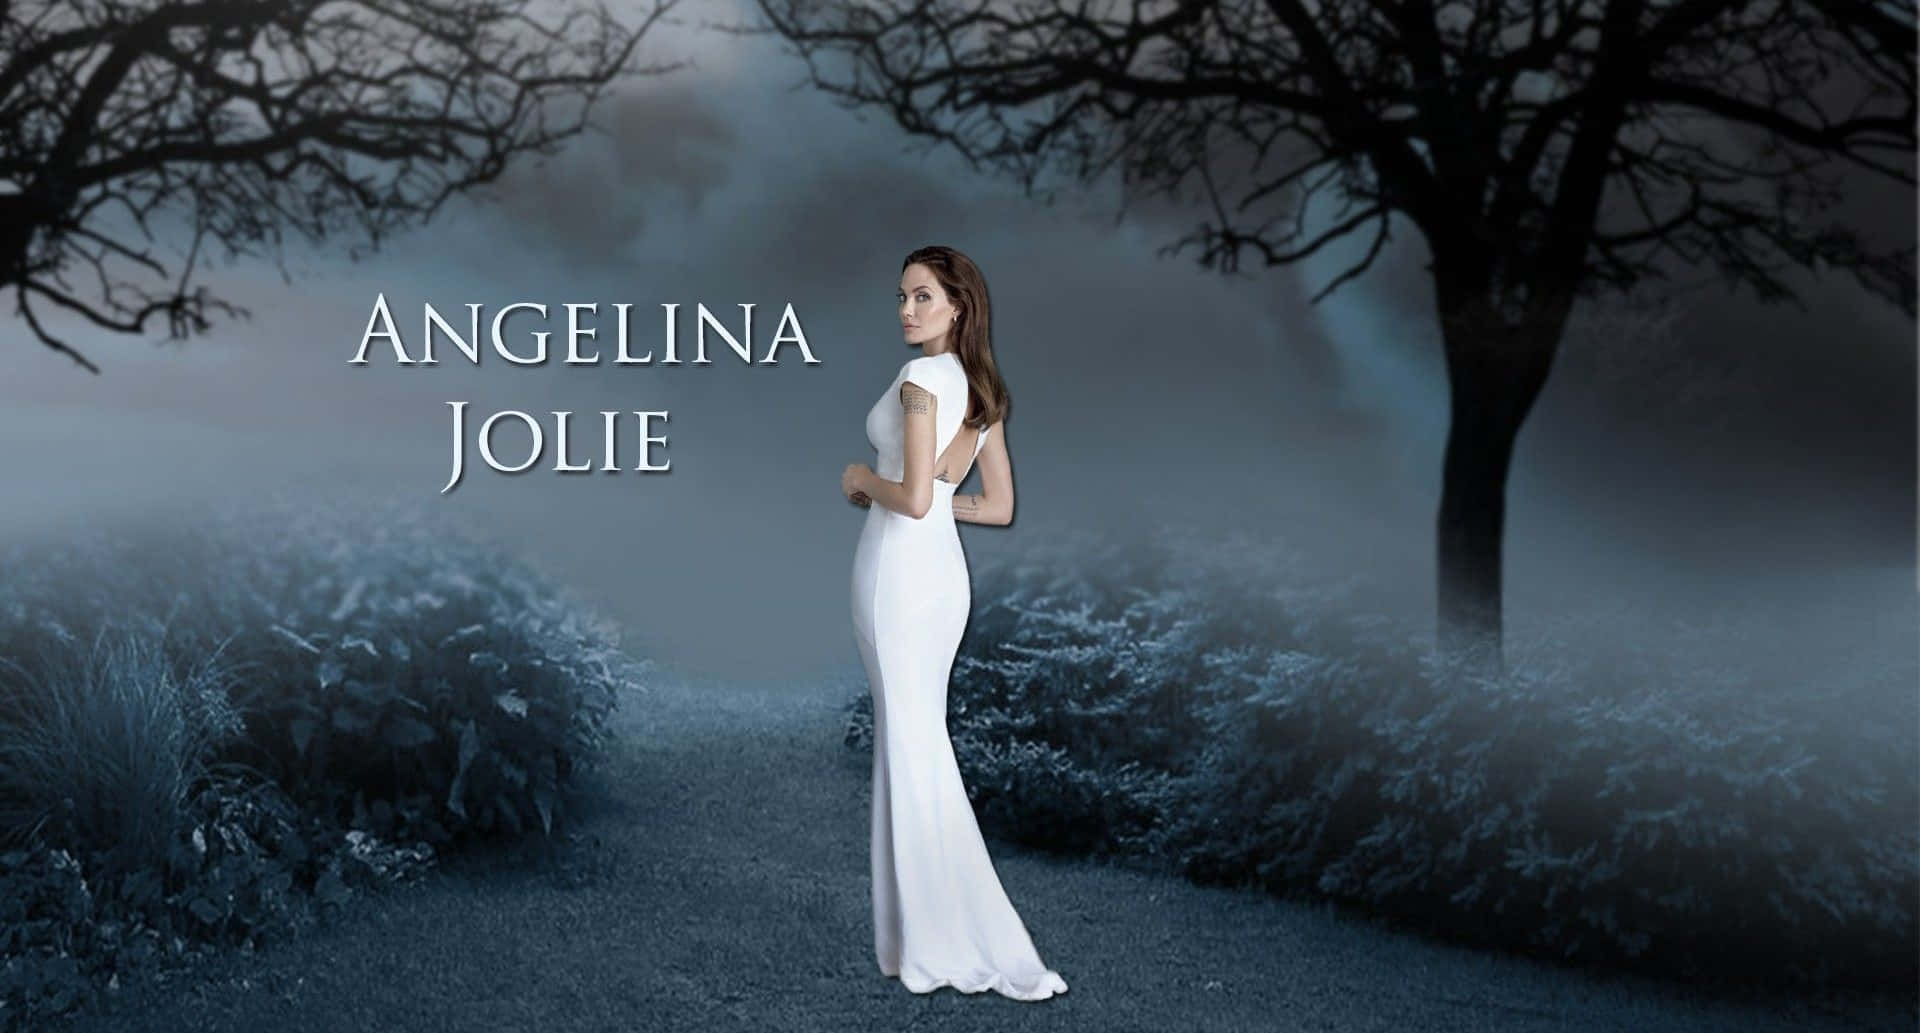 Angelinajolie, Hollywood-schauspielerin Der A-liste